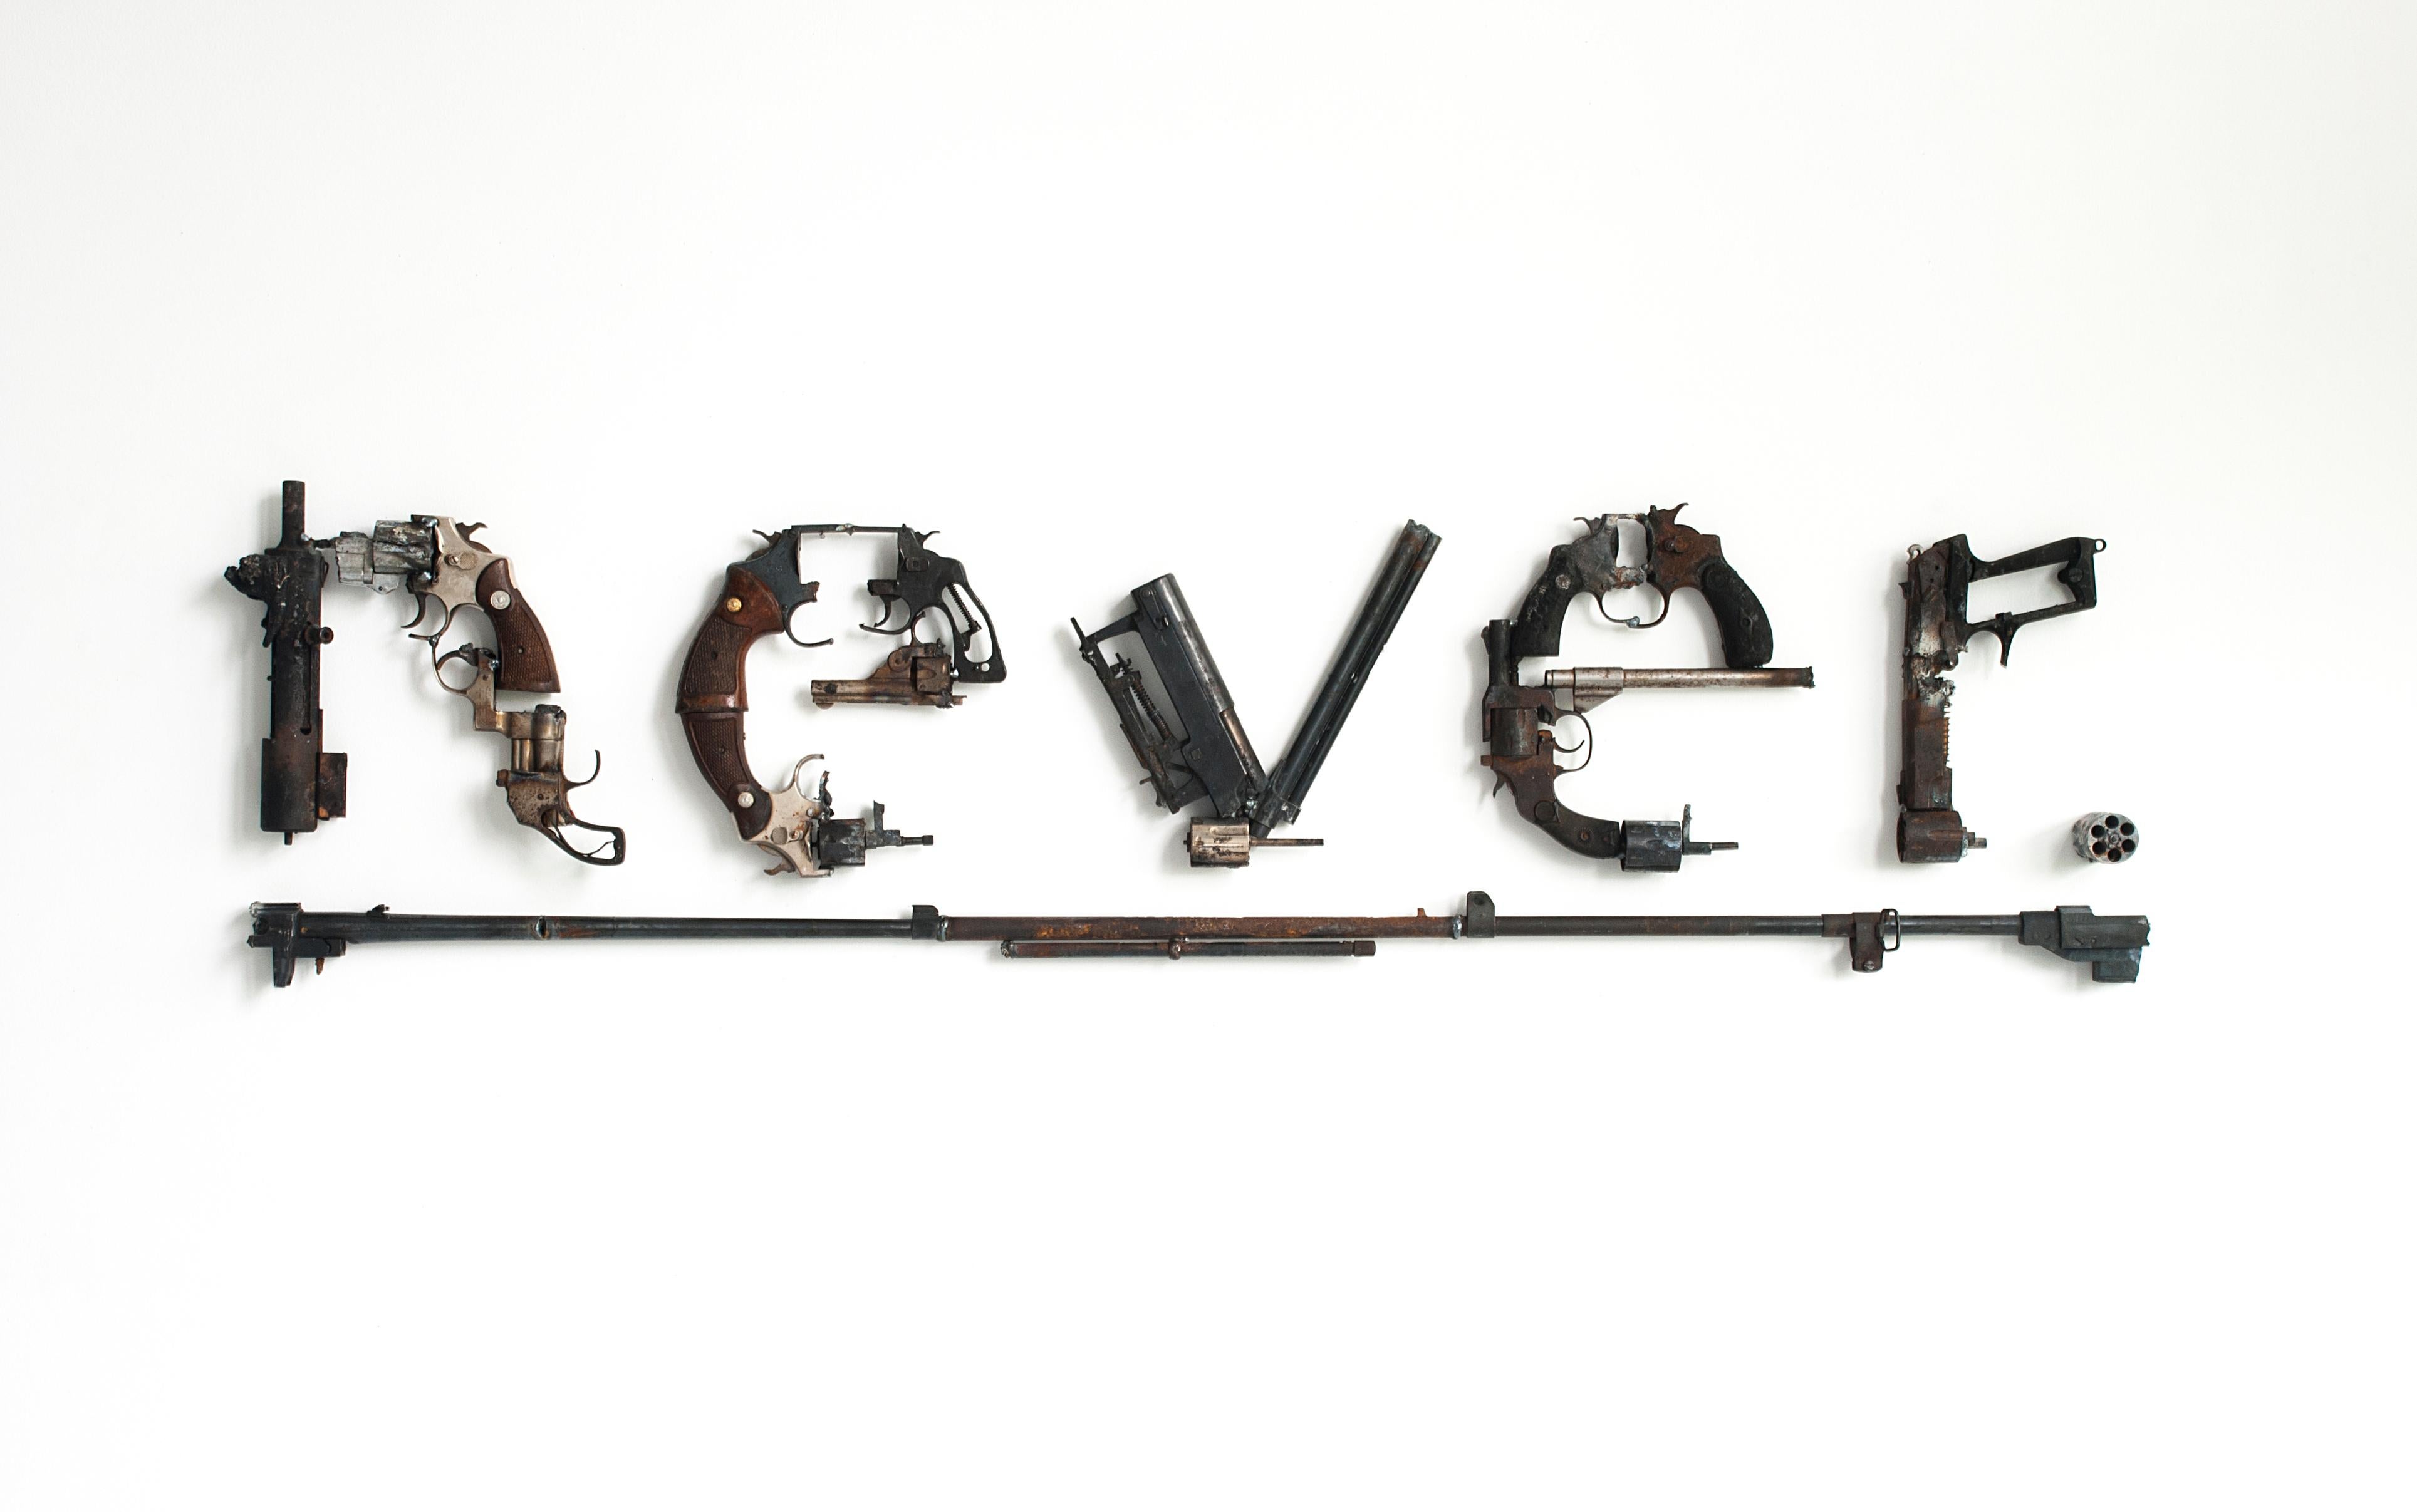 Never - Art by Paul Villinski